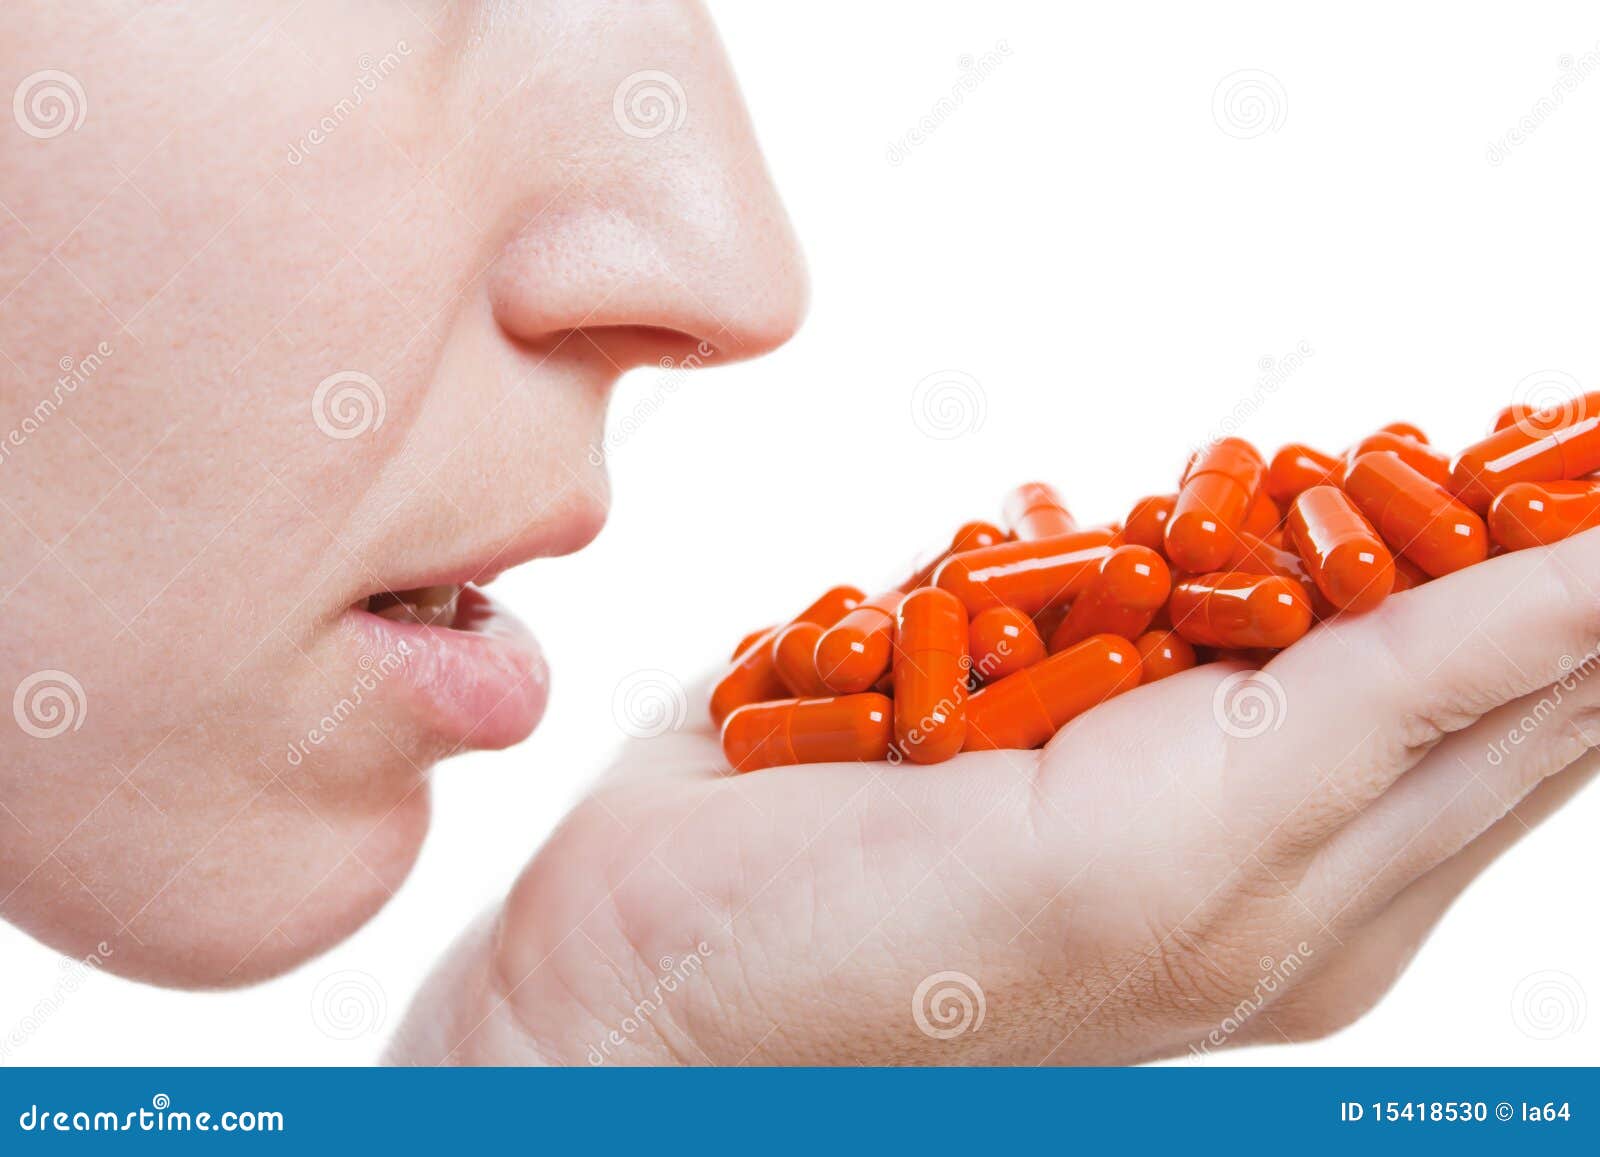 medicine pill dose